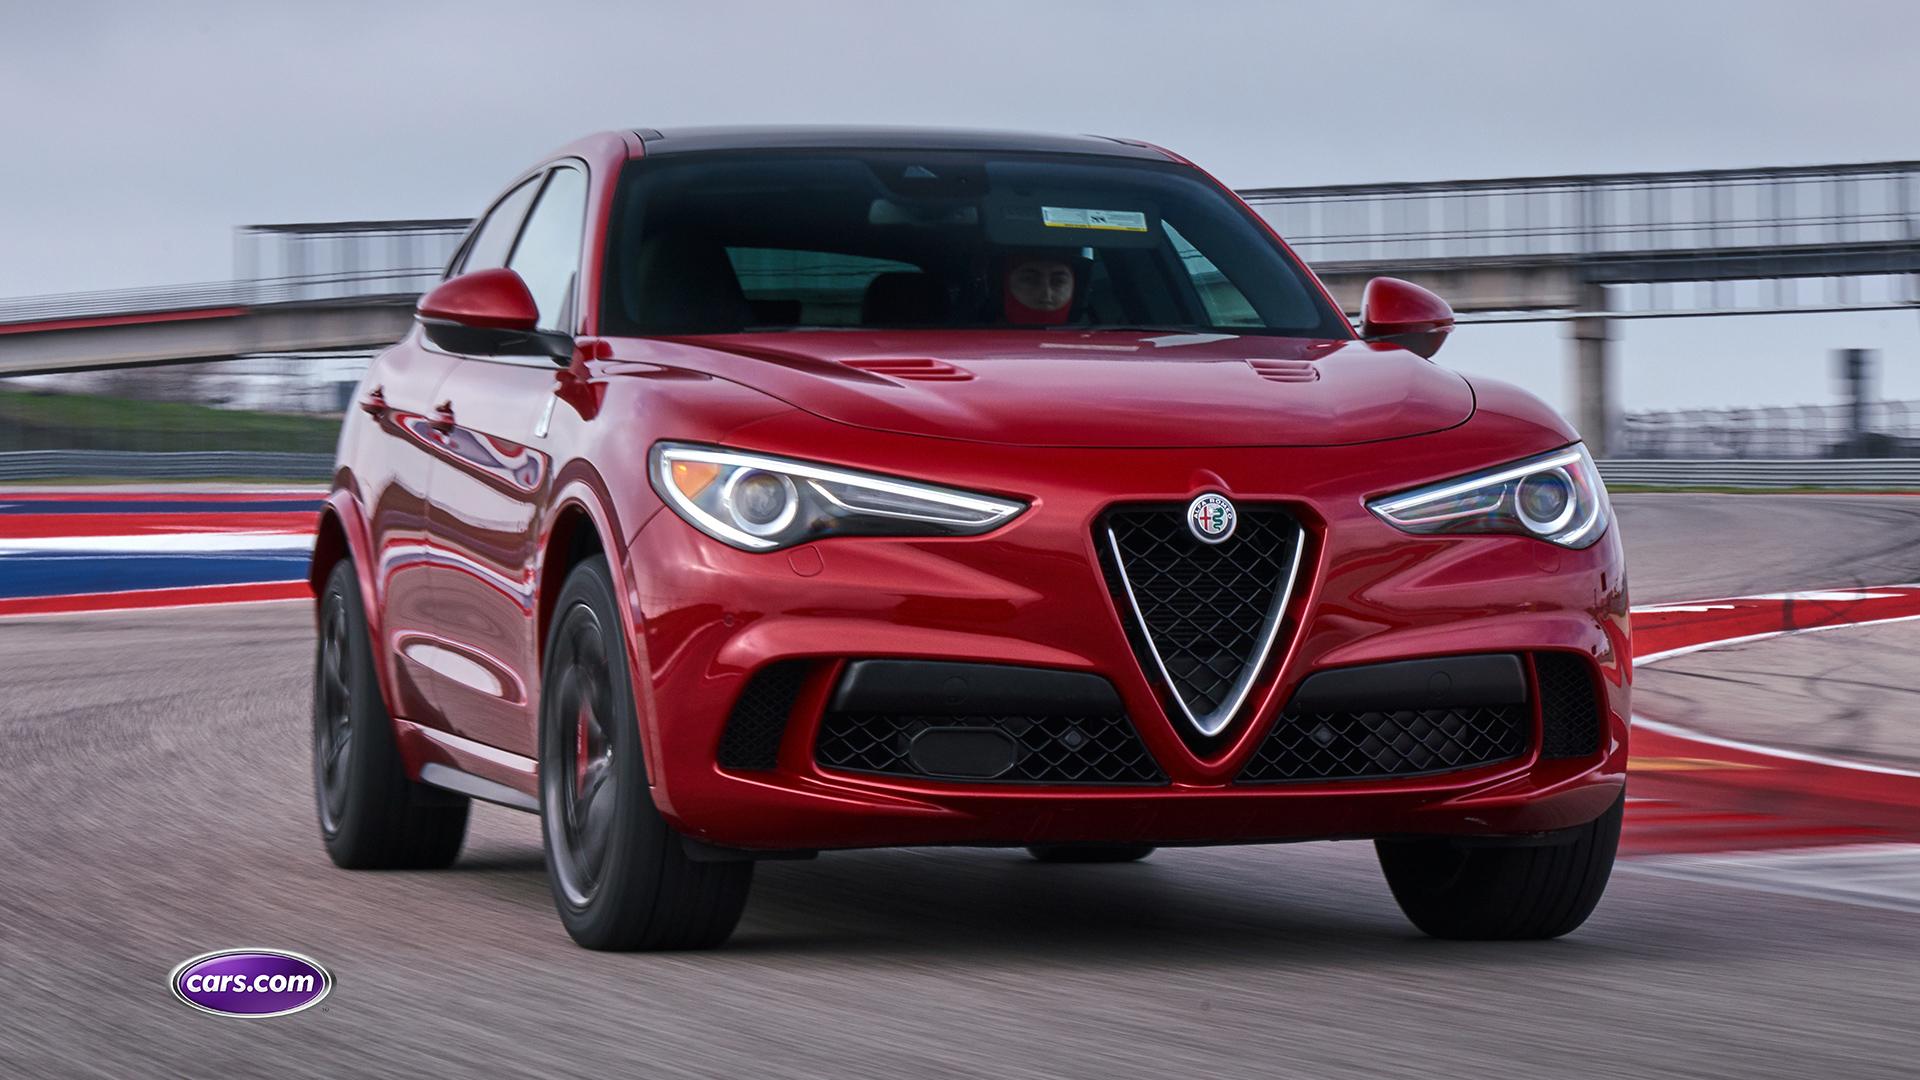 2018 Alfa Romeo Stelvio Expert Reviews, Specs and Photos | Cars.com